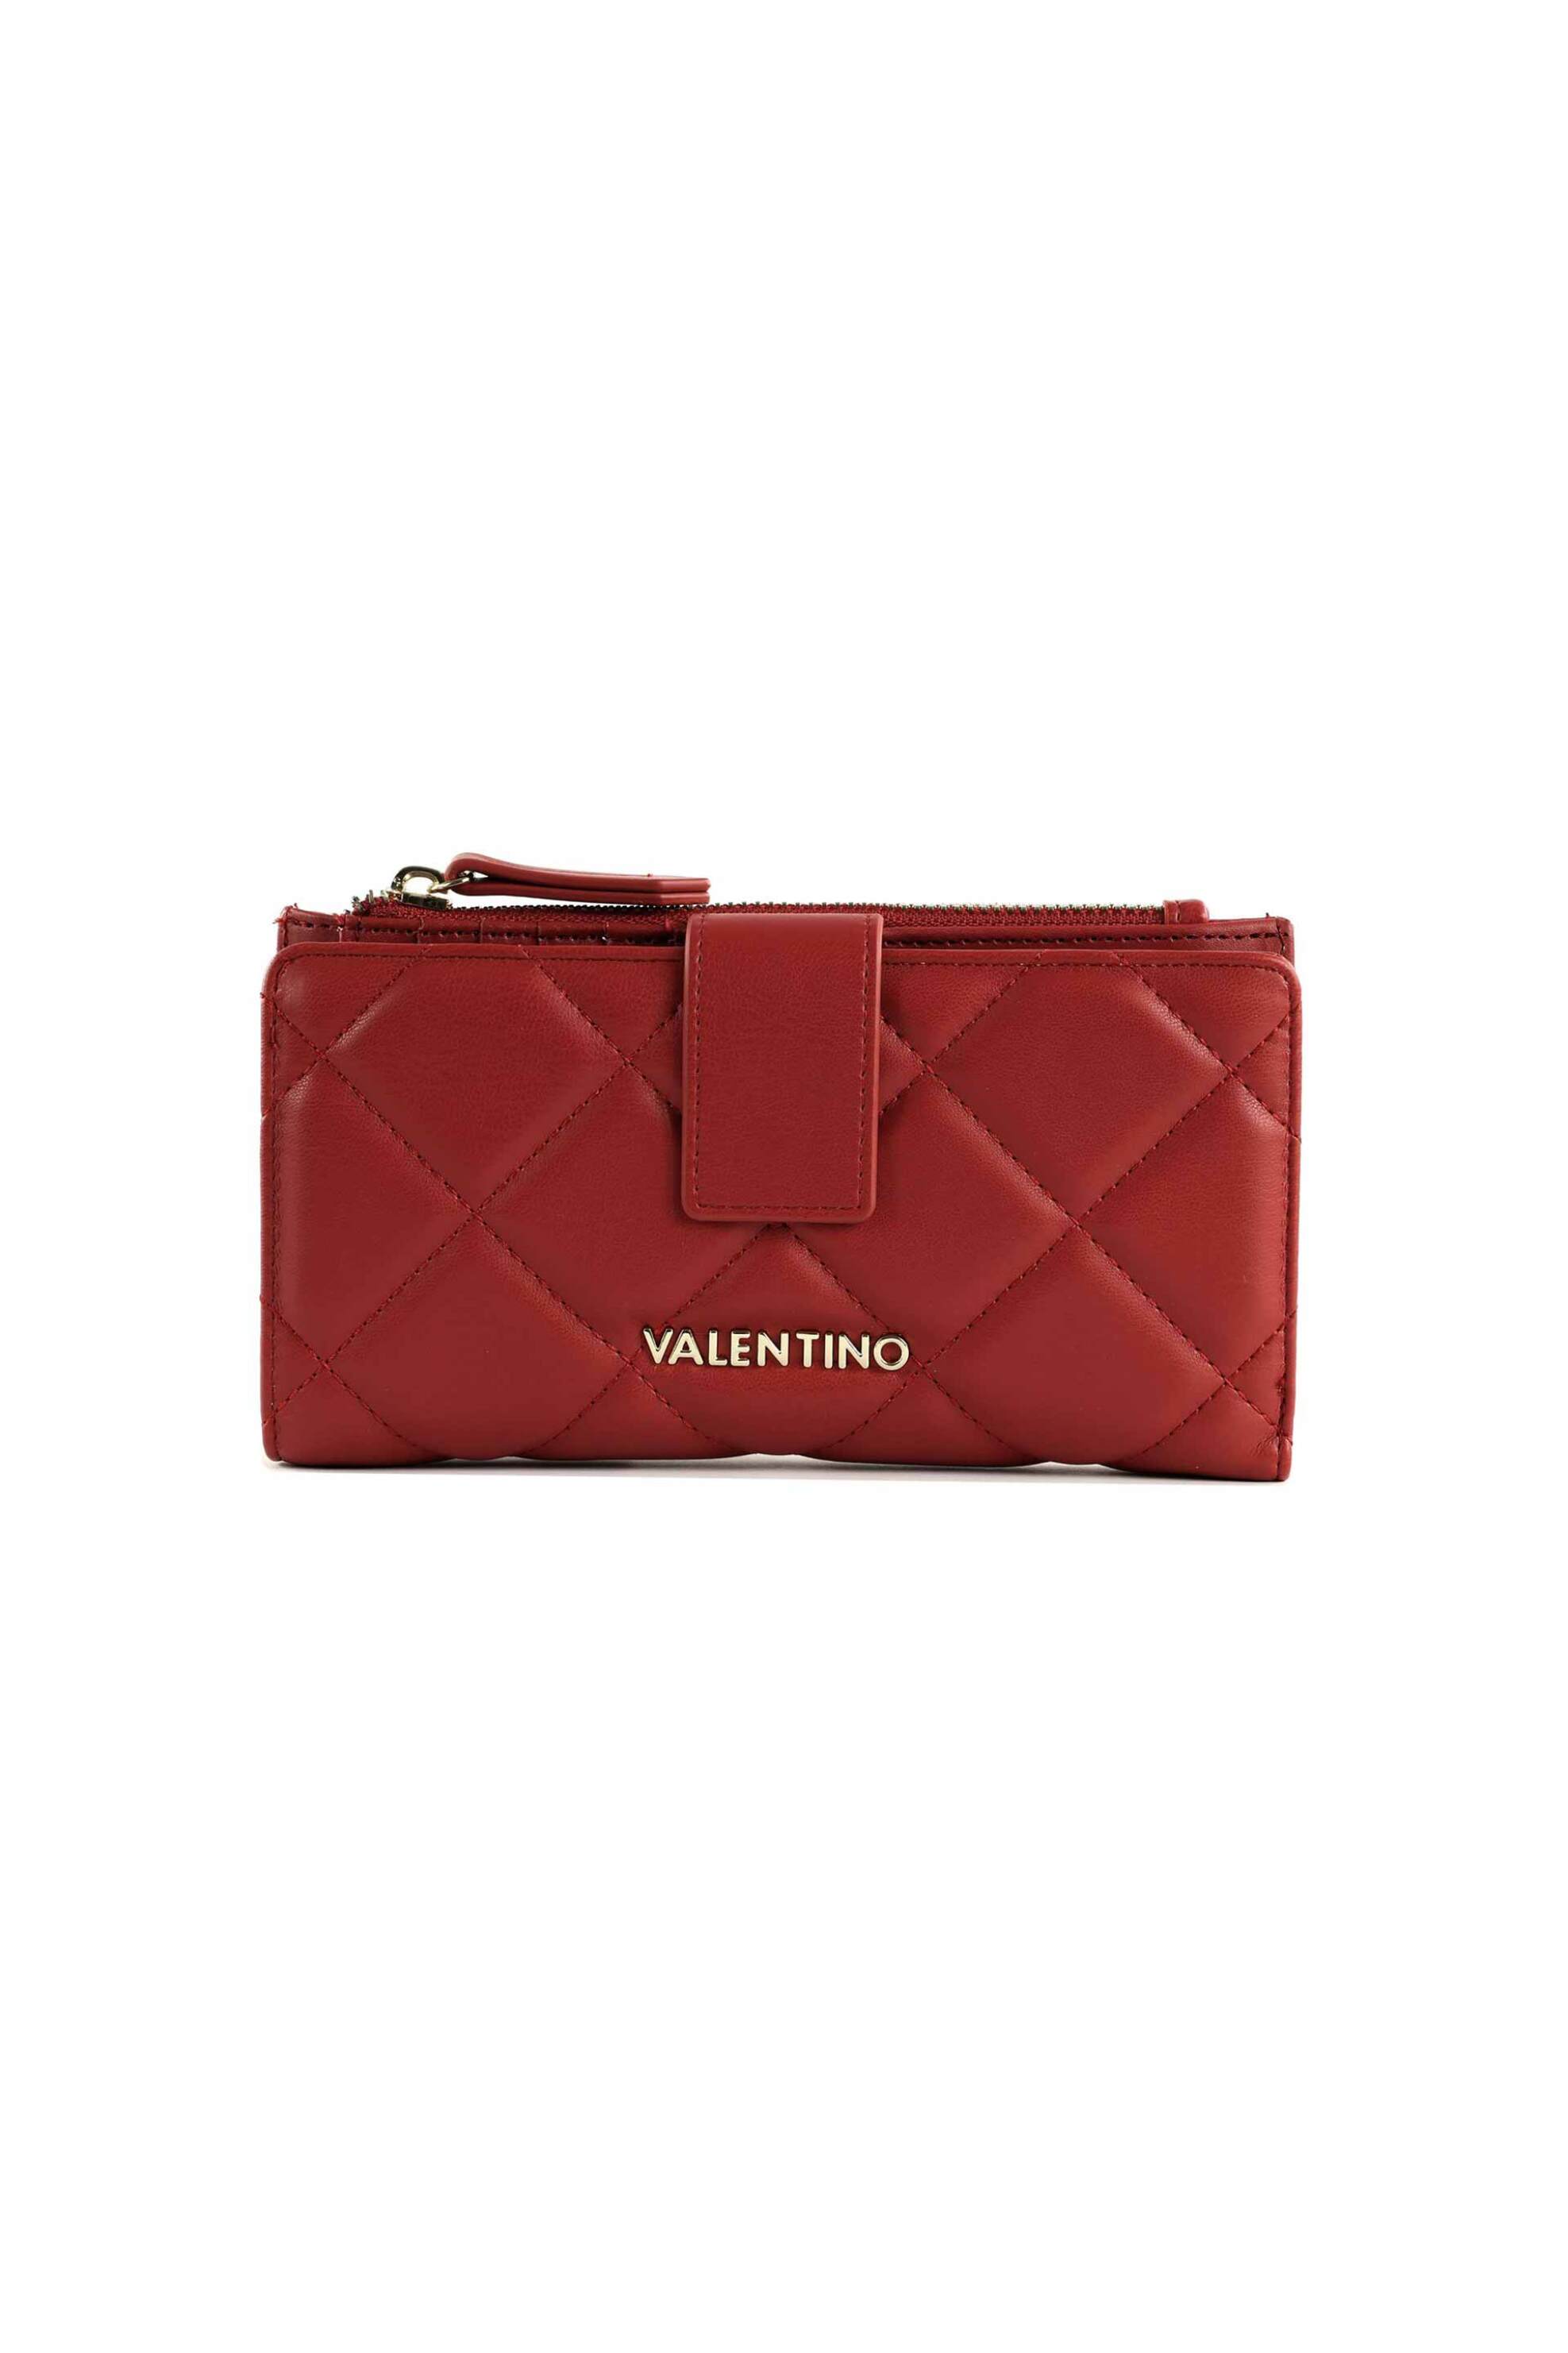 Γυναίκα > ΑΞΕΣΟΥΑΡ > Πορτοφόλια & Θήκες Valentino γυναικείο πορτοφόλι μονόχρωμο με μεταλλικό λογότυπο "Ocarina" - 55KVPS3KK229R/O Κόκκινο